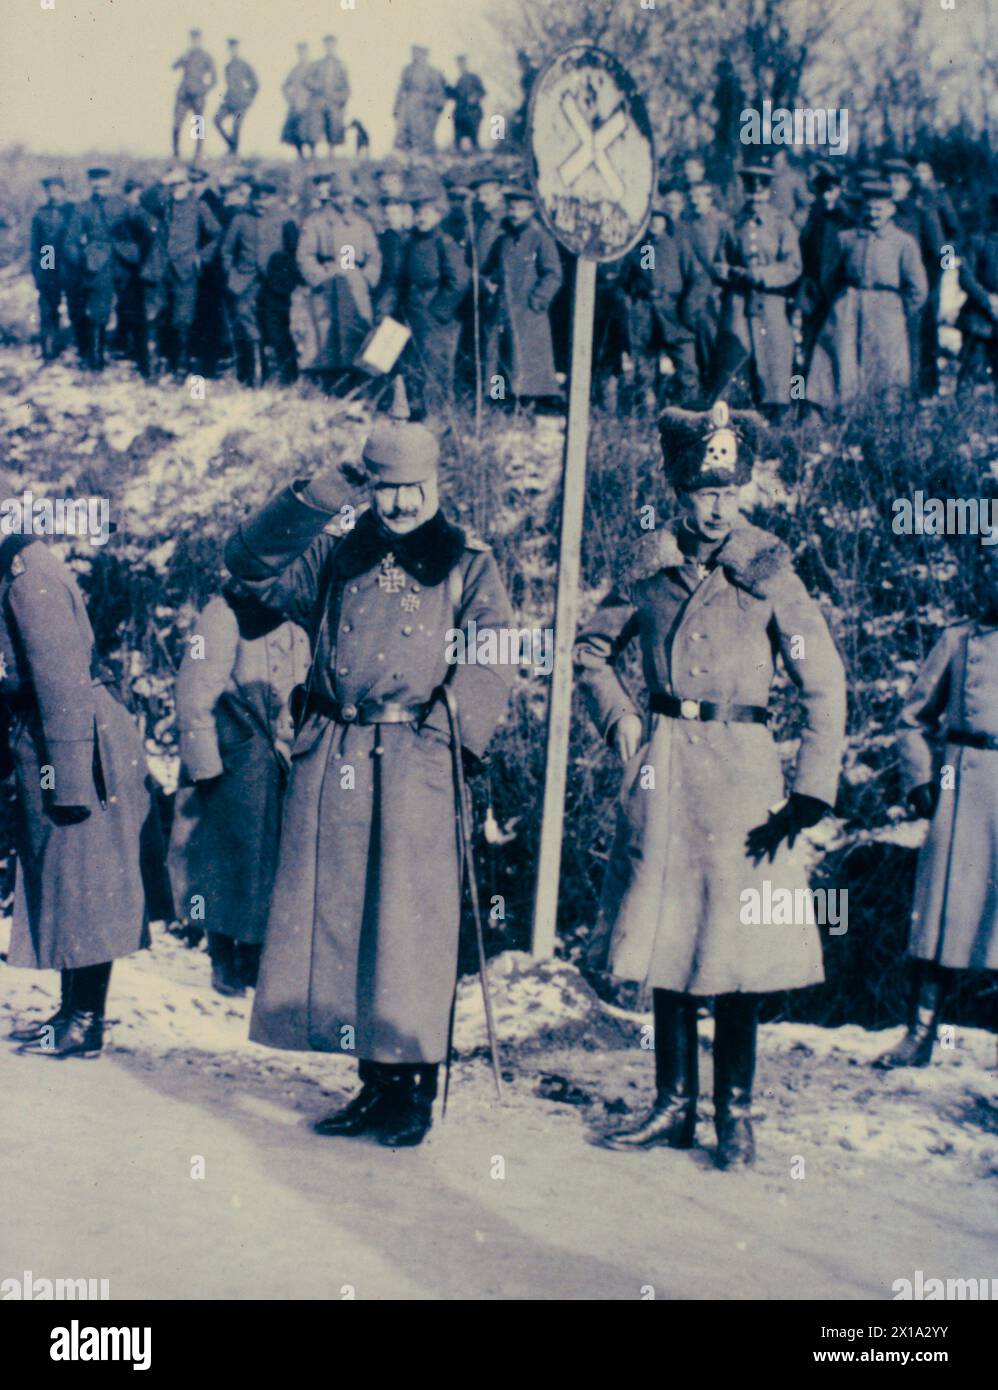 L'imperatore Guglielmo II di Germania e il principe ereditario Guglielmo salutano le truppe che arrivano sul fronte occidentale, Germania 1917 Foto Stock